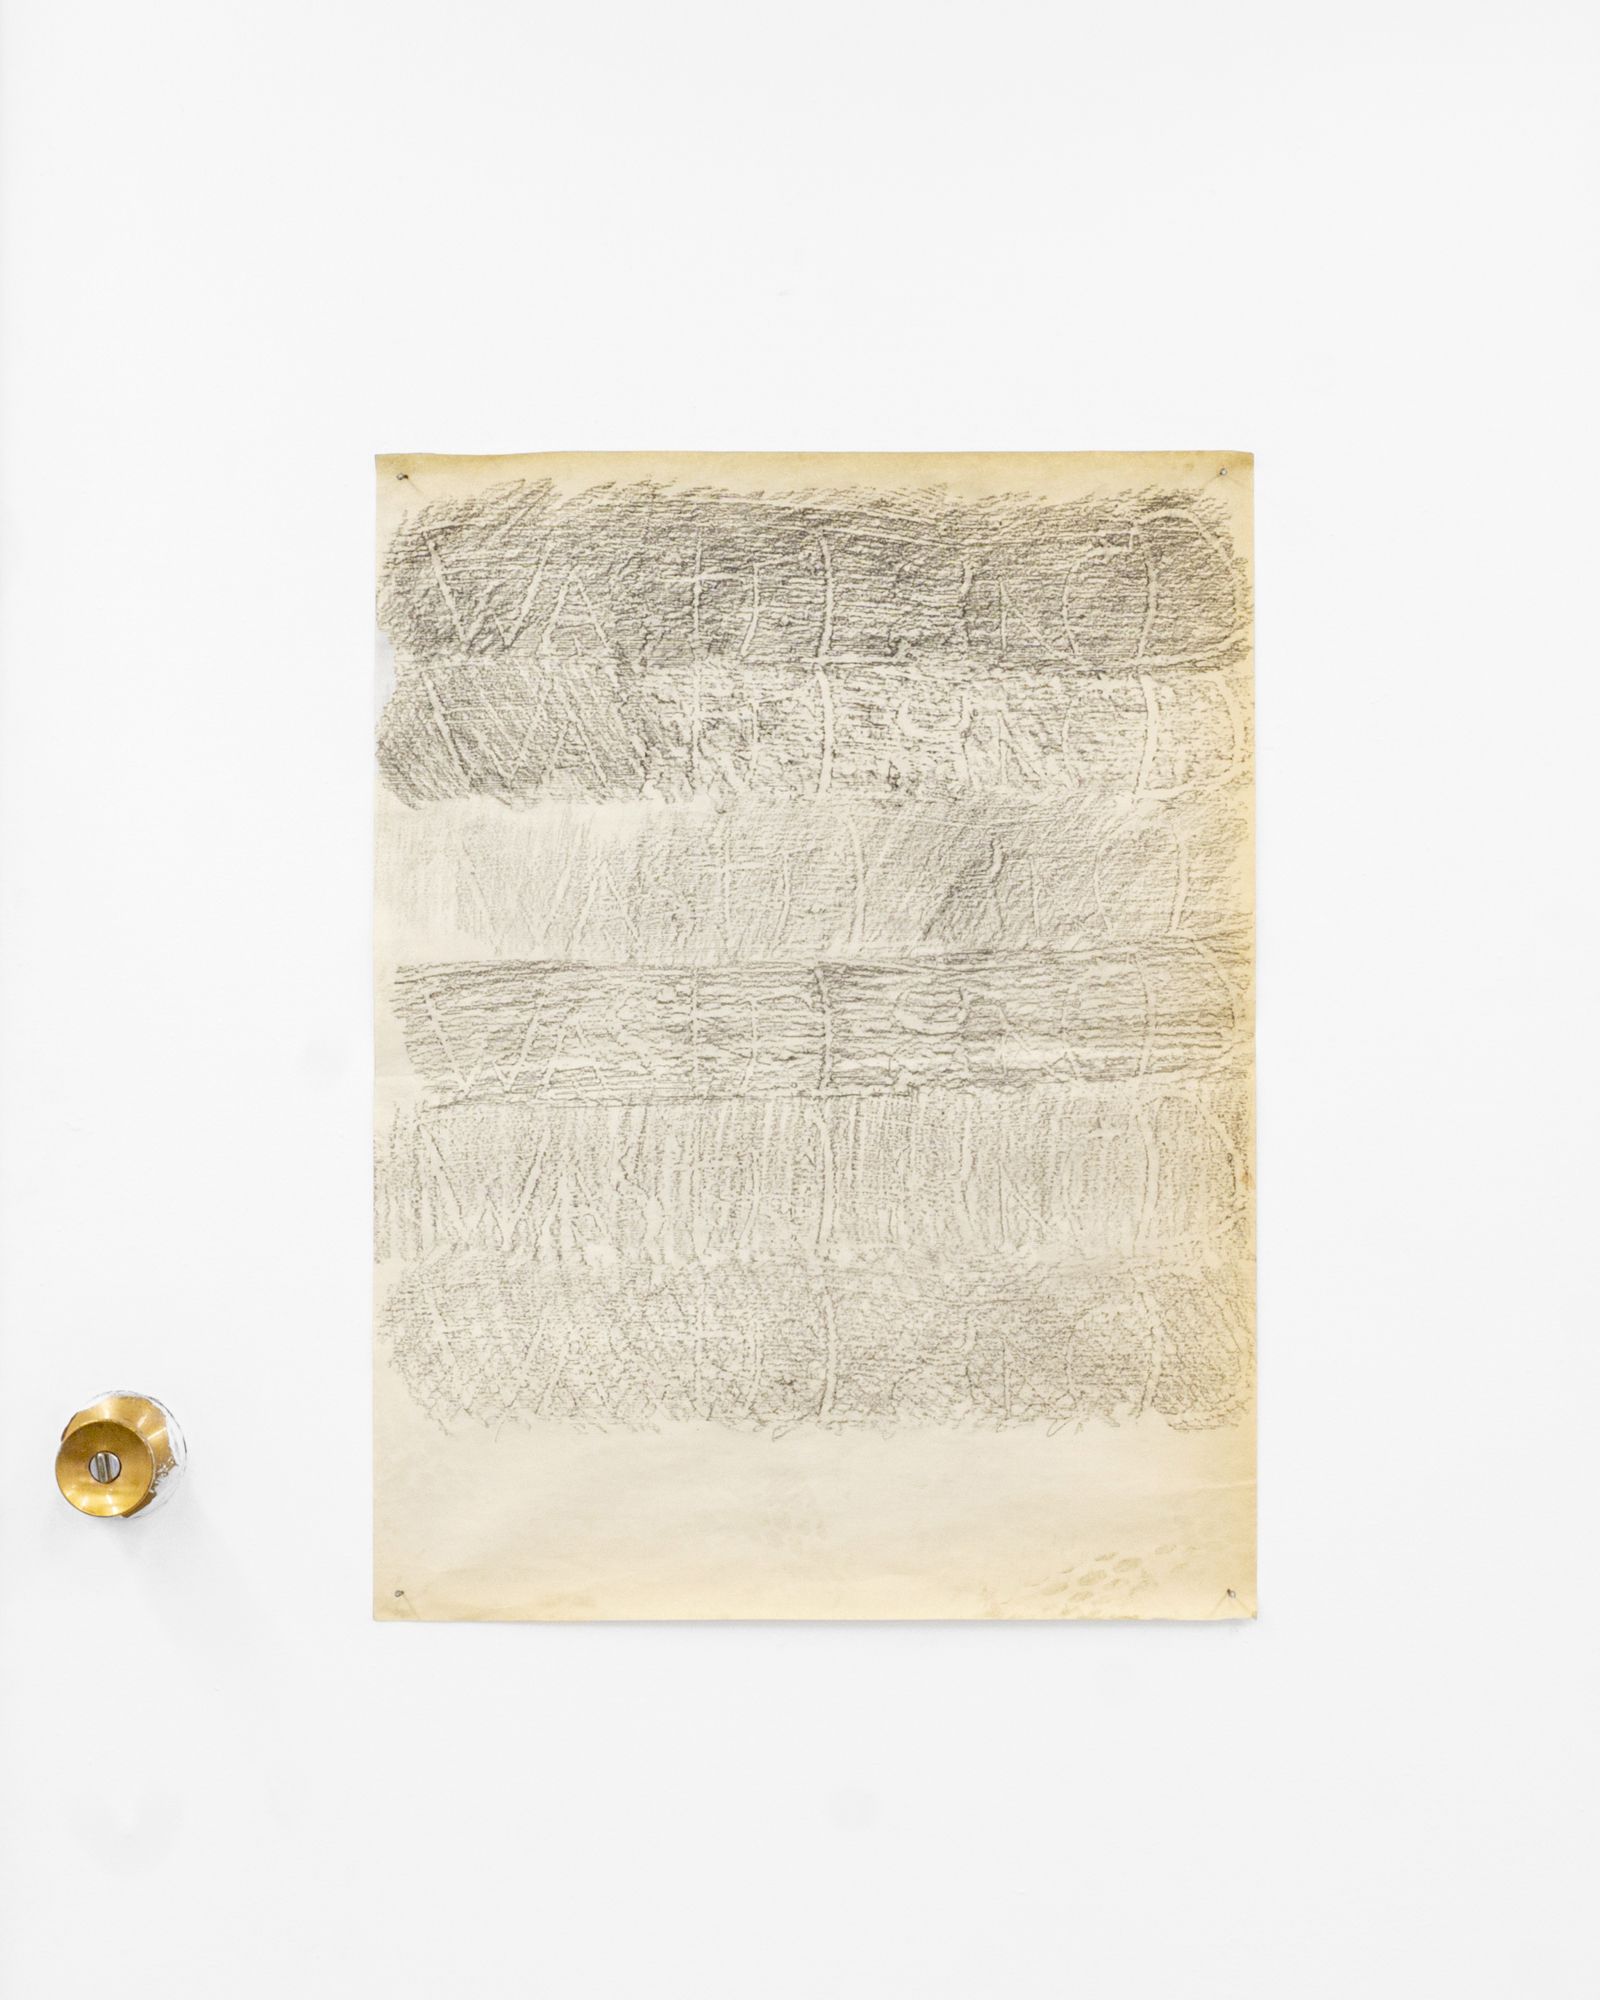  Garrett Lockhart, “WASTELAND,”2019, Lumber crayon, found paper, salvaged nails, 24x18” 